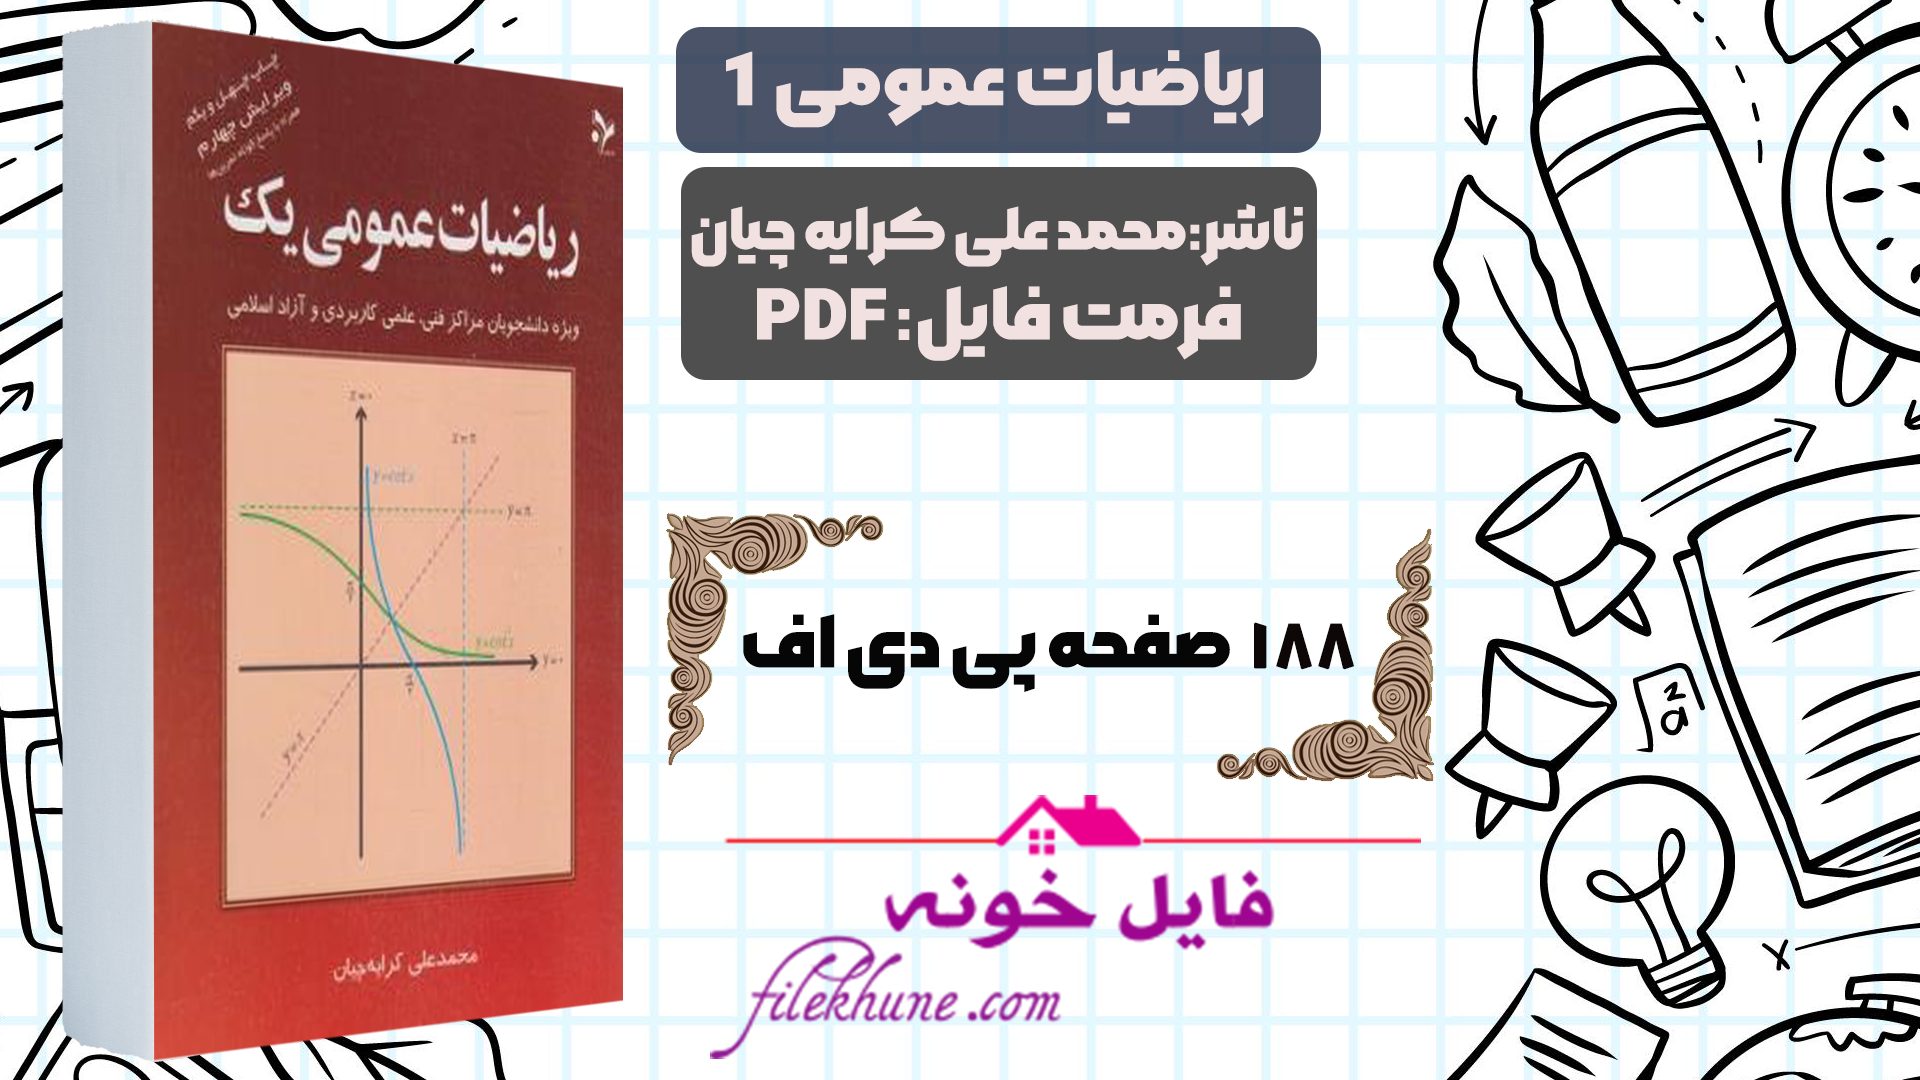 دانلود کتاب ریاضیات عمومی 1 محمد علی کرایه چیان PDF - فایل خونه 